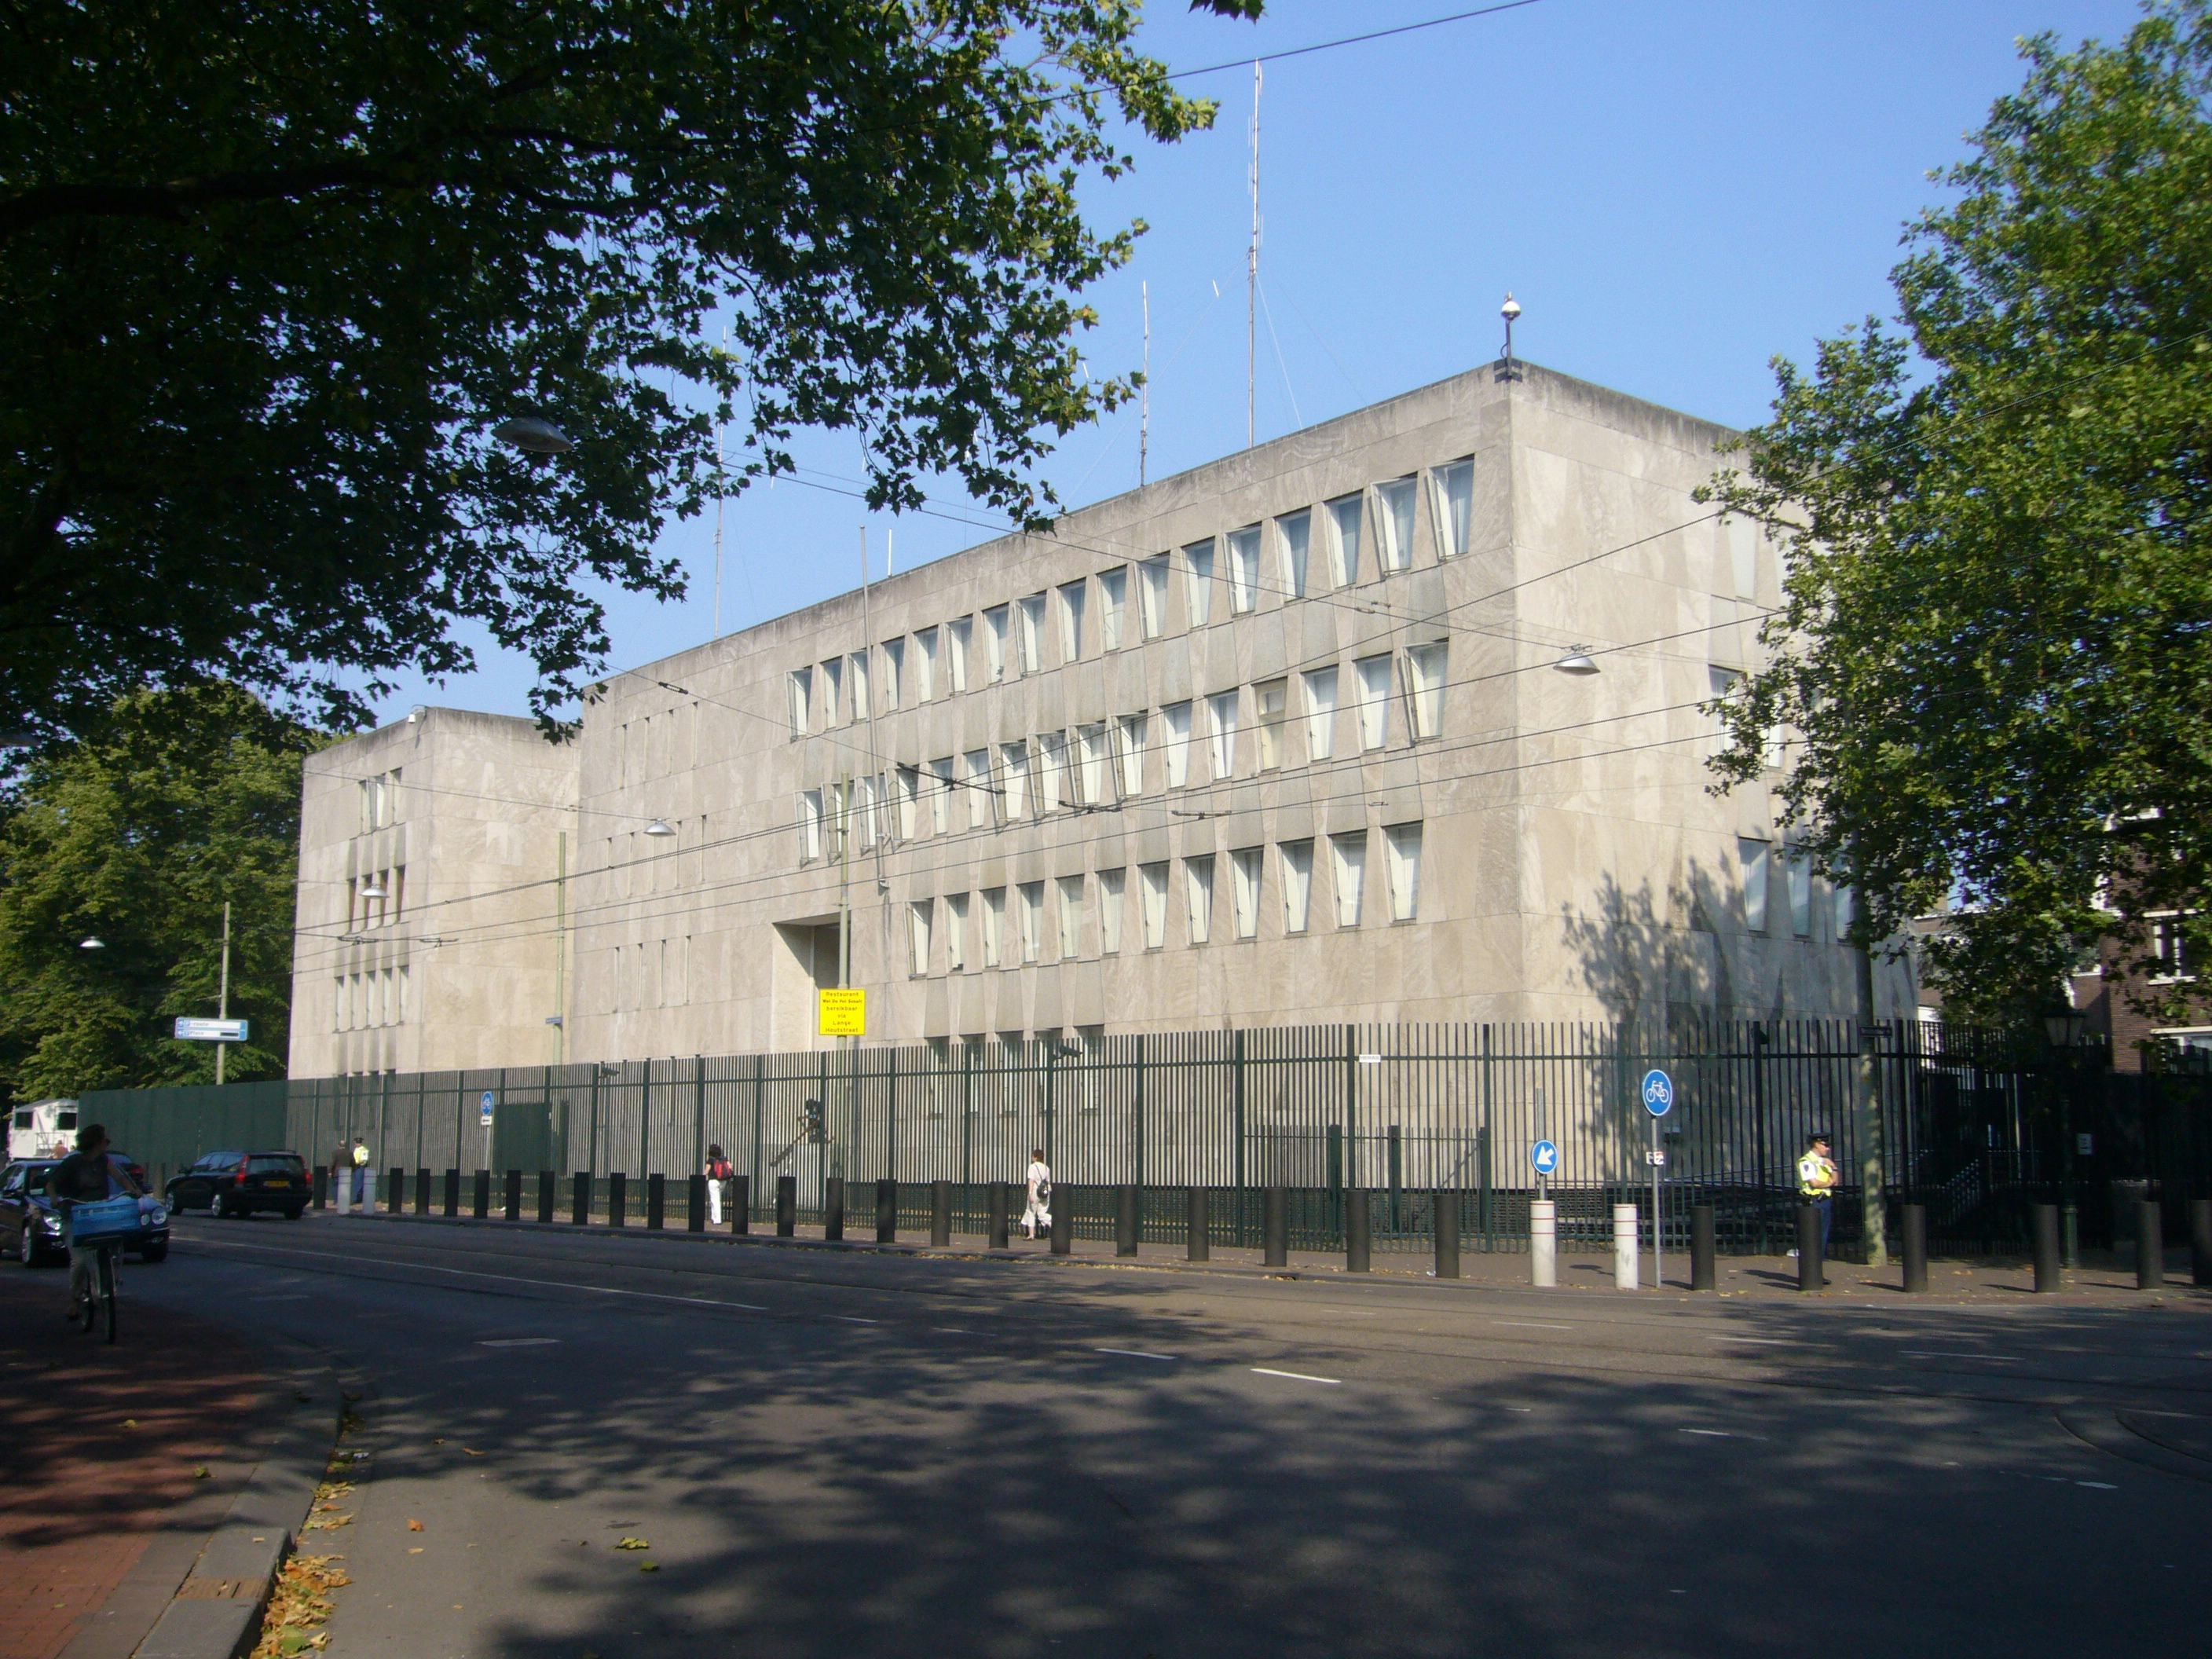 Amerikaanse ambassade in Den Haag. Beeld Wikimedia